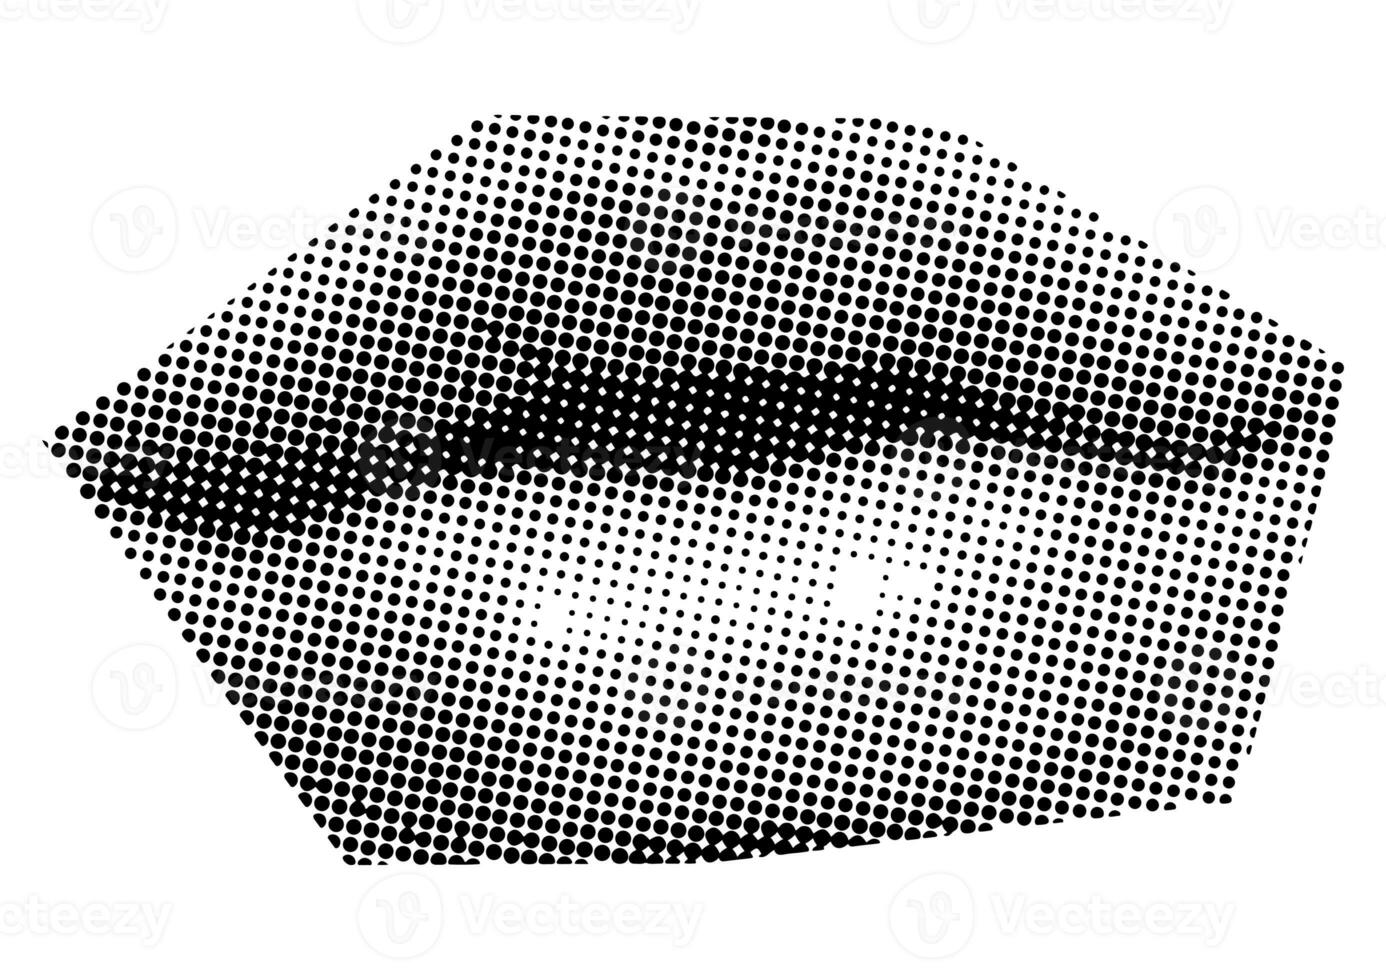 boca y labios, sonrisa, lengua, puntos punk y2k negro y blanco collage elementos foto